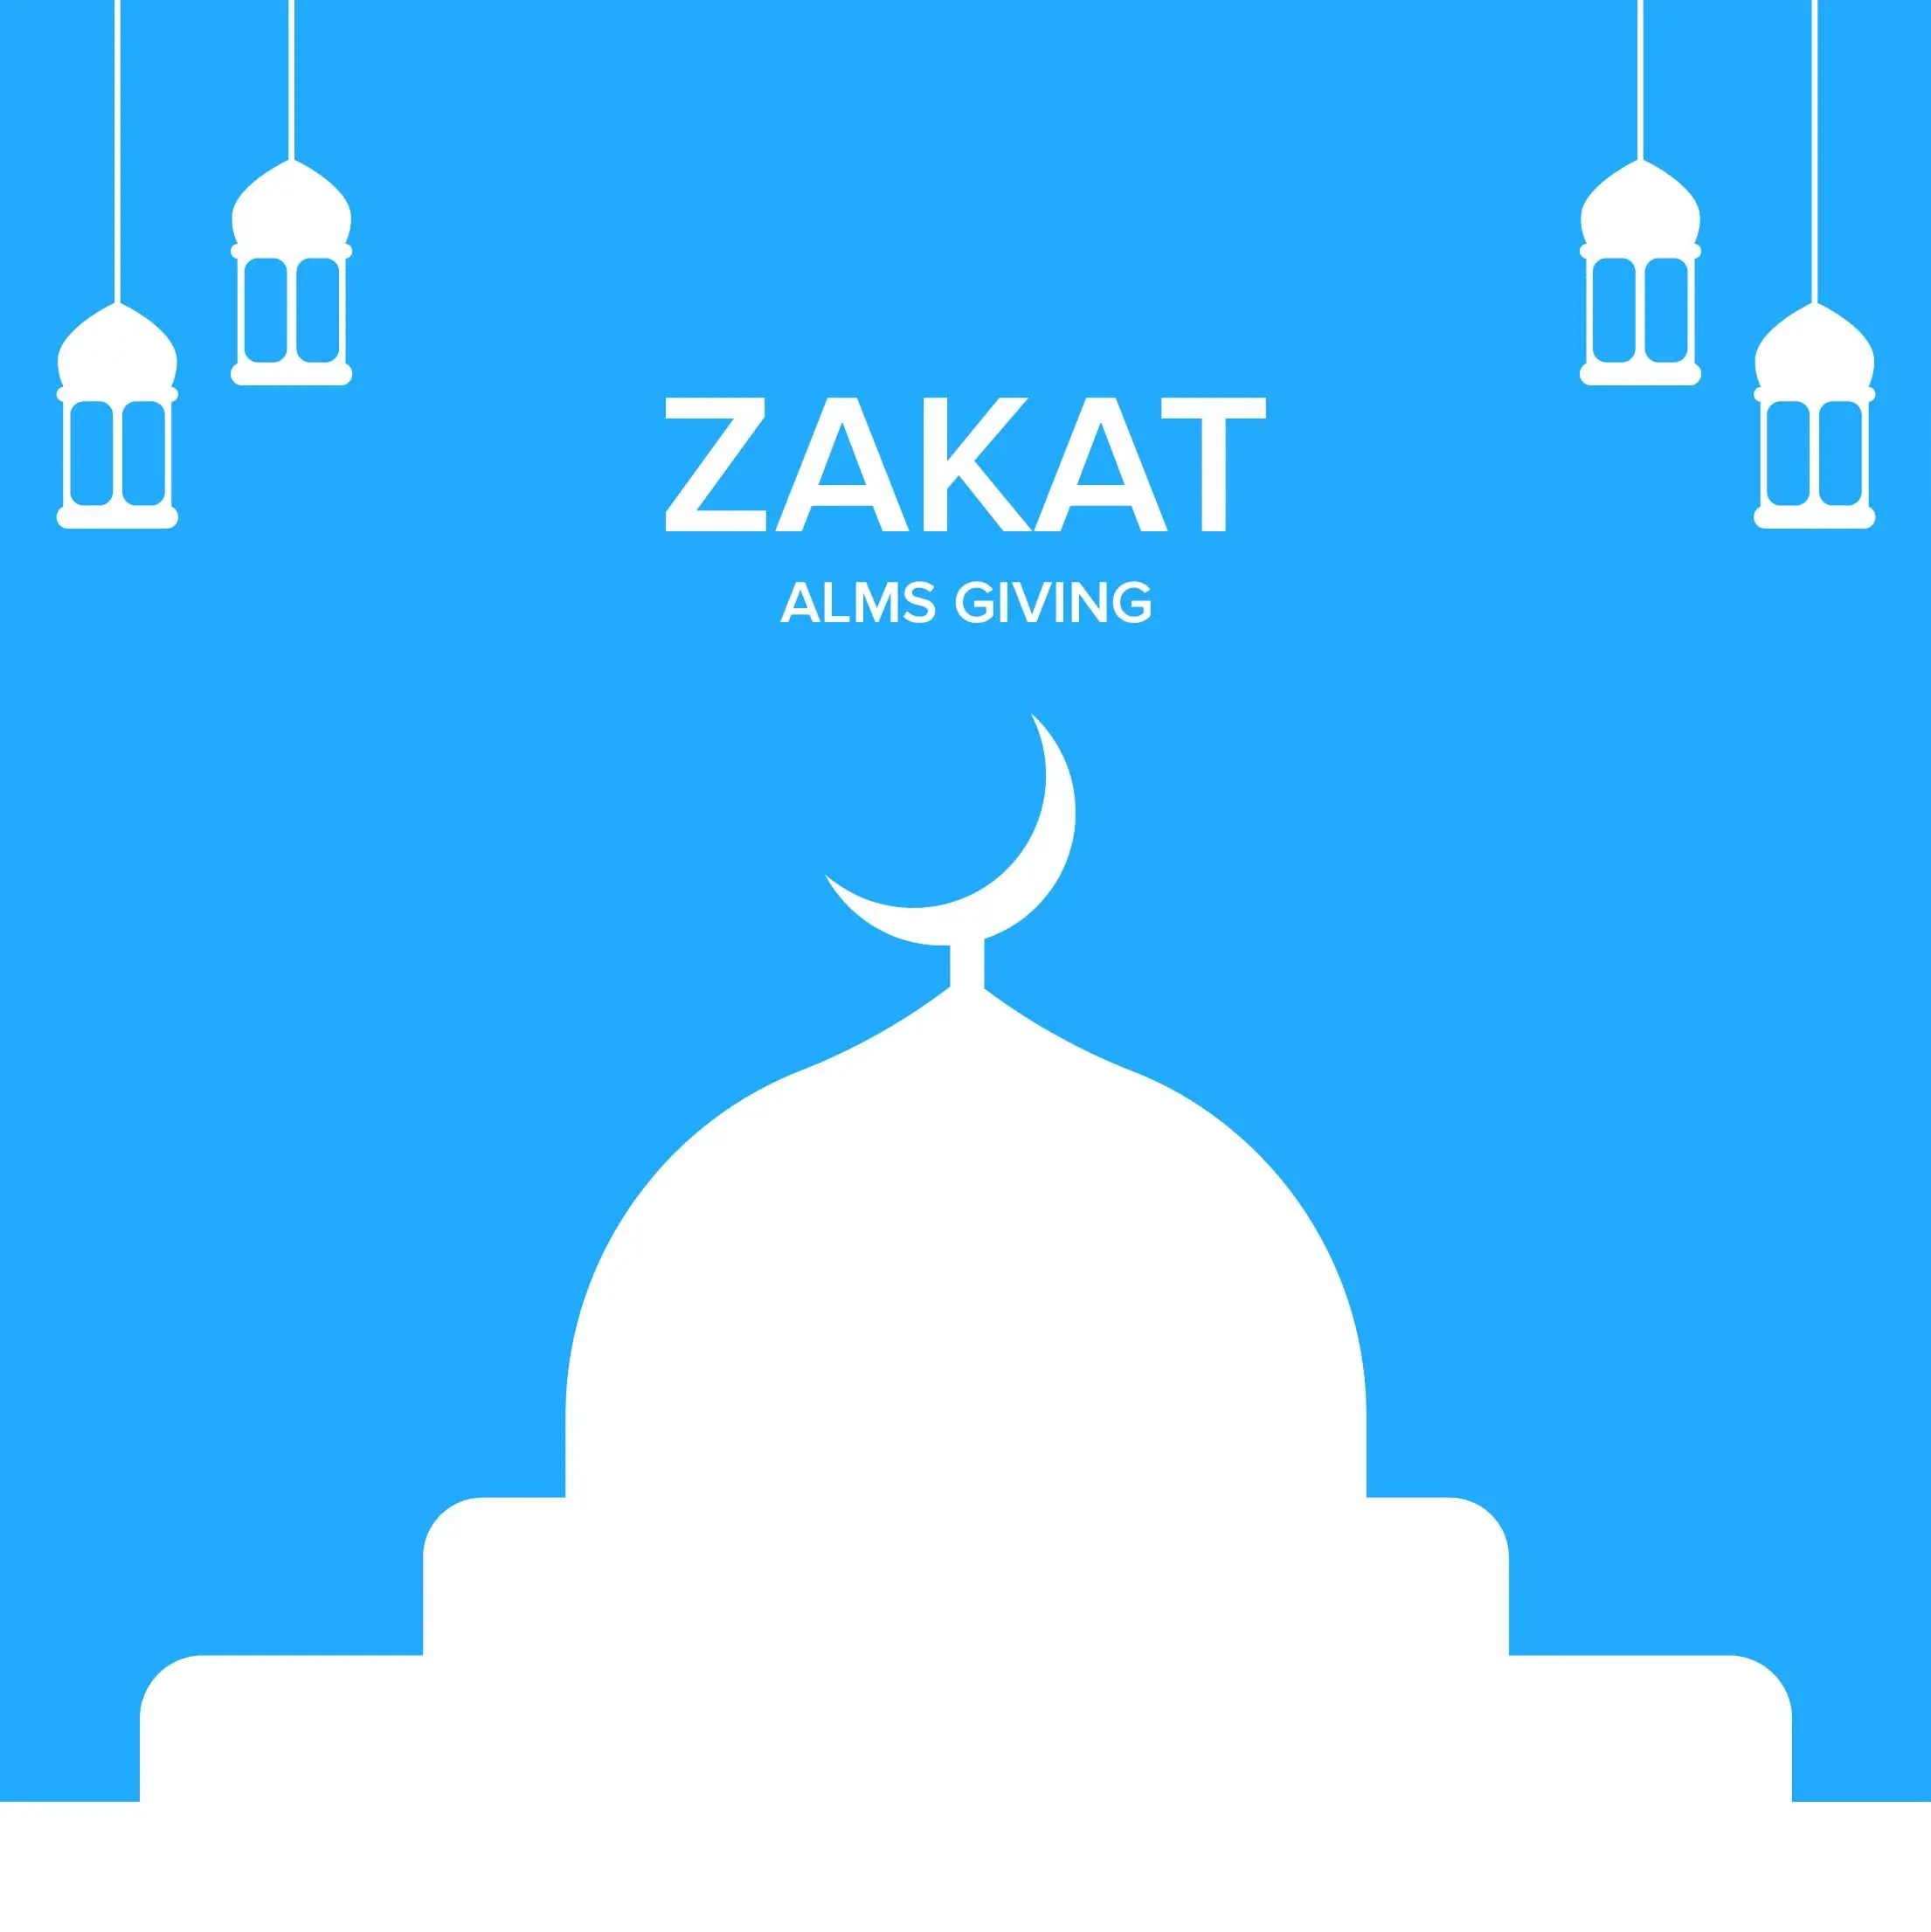 zakat - alms giving